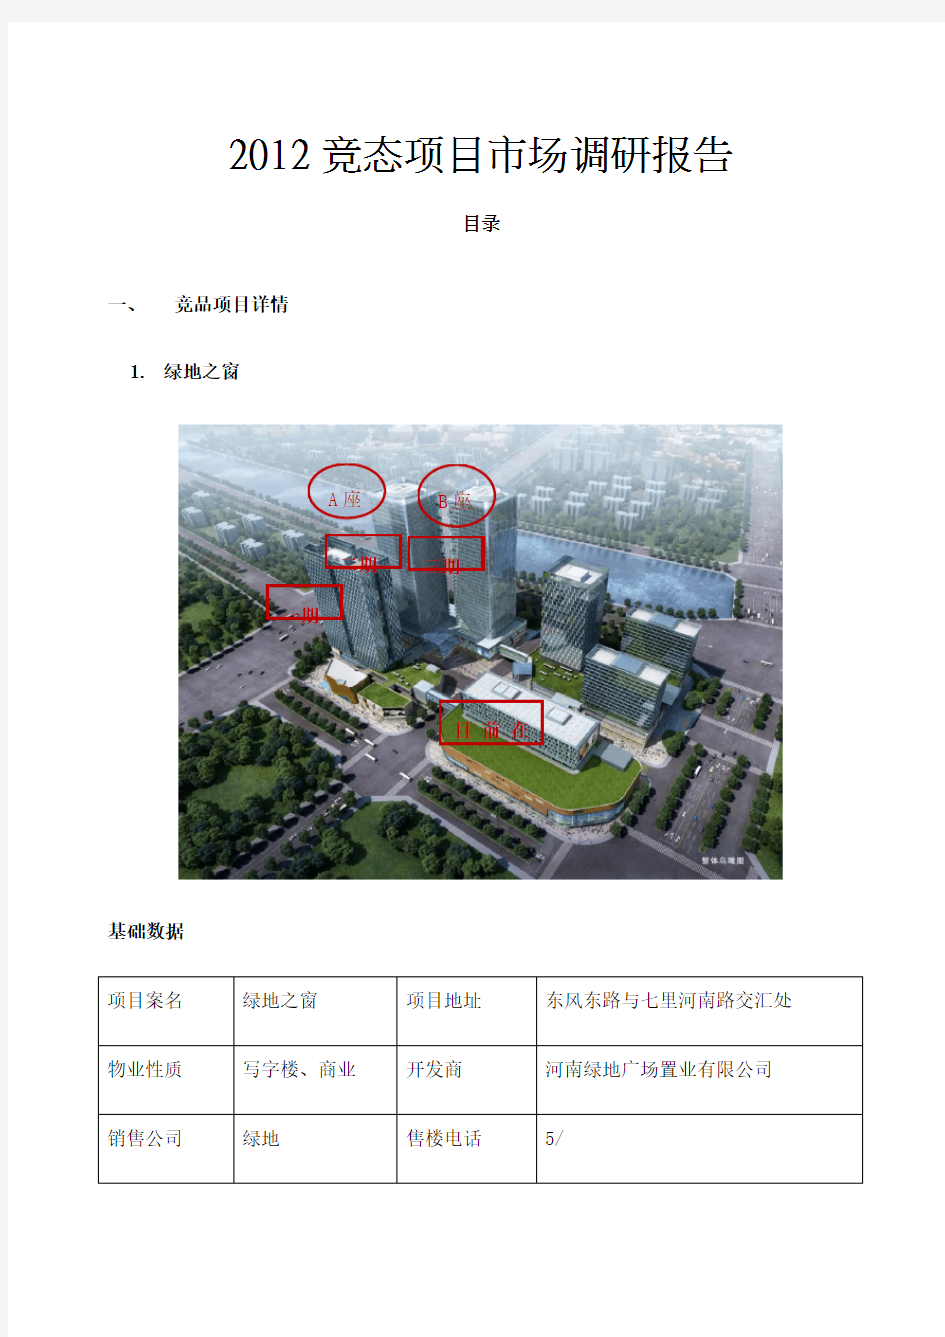 年郑州cbd郑东新区商务写字楼项目分析报告